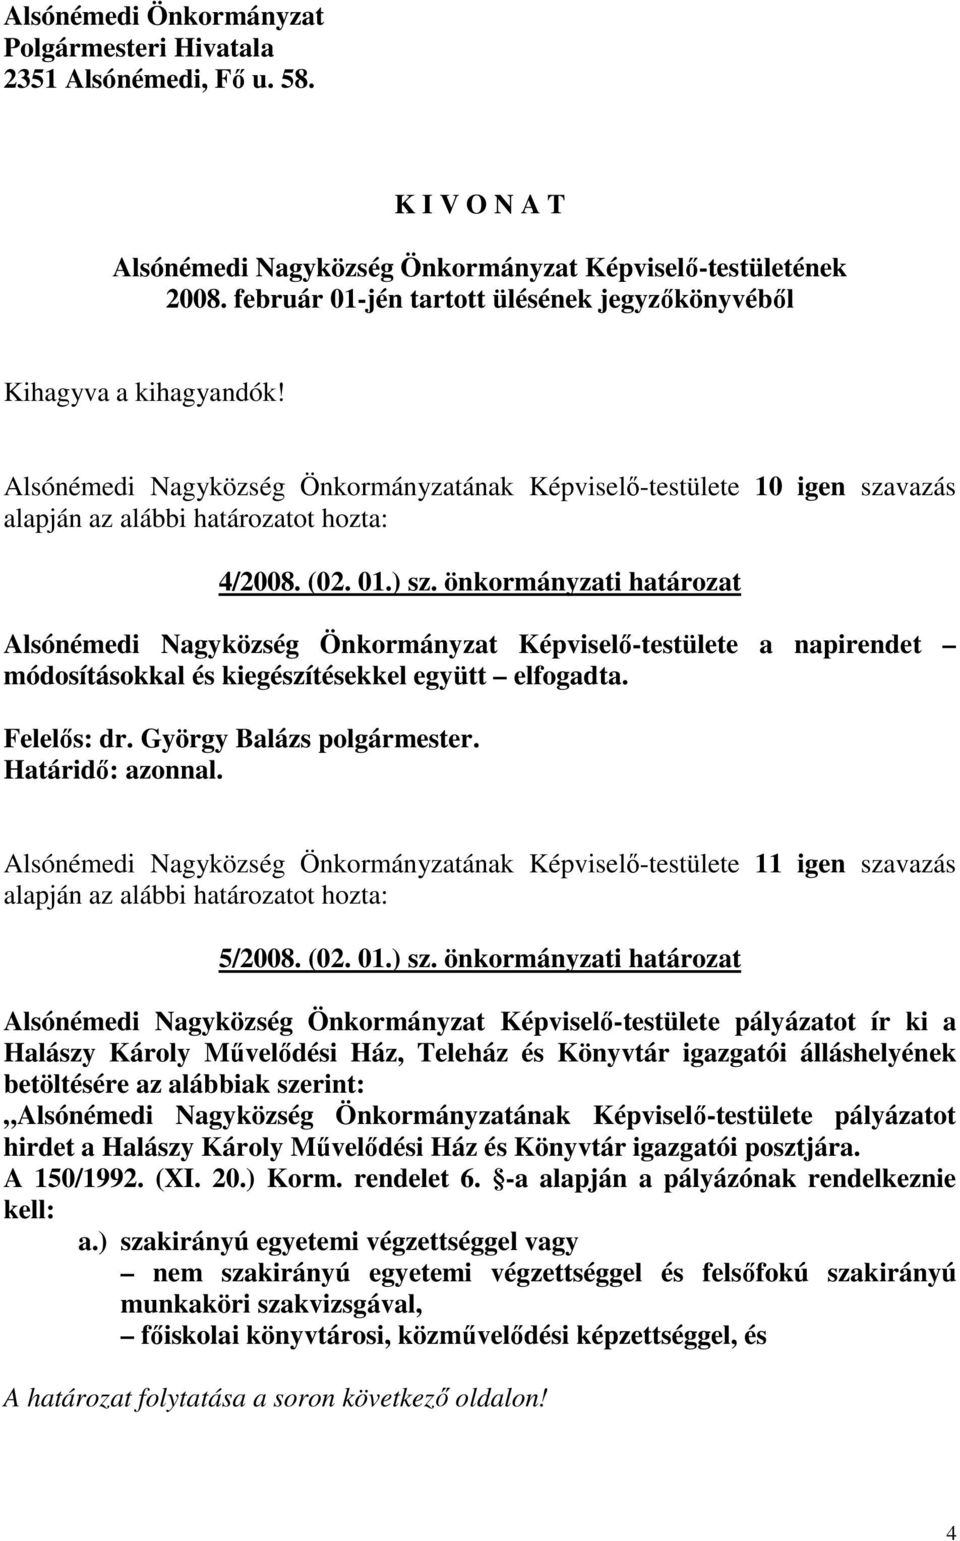 önkormányzati határozat Alsónémedi Nagyközség Önkormányzat Képviselı-testülete a napirendet módosításokkal és kiegészítésekkel együtt elfogadta.